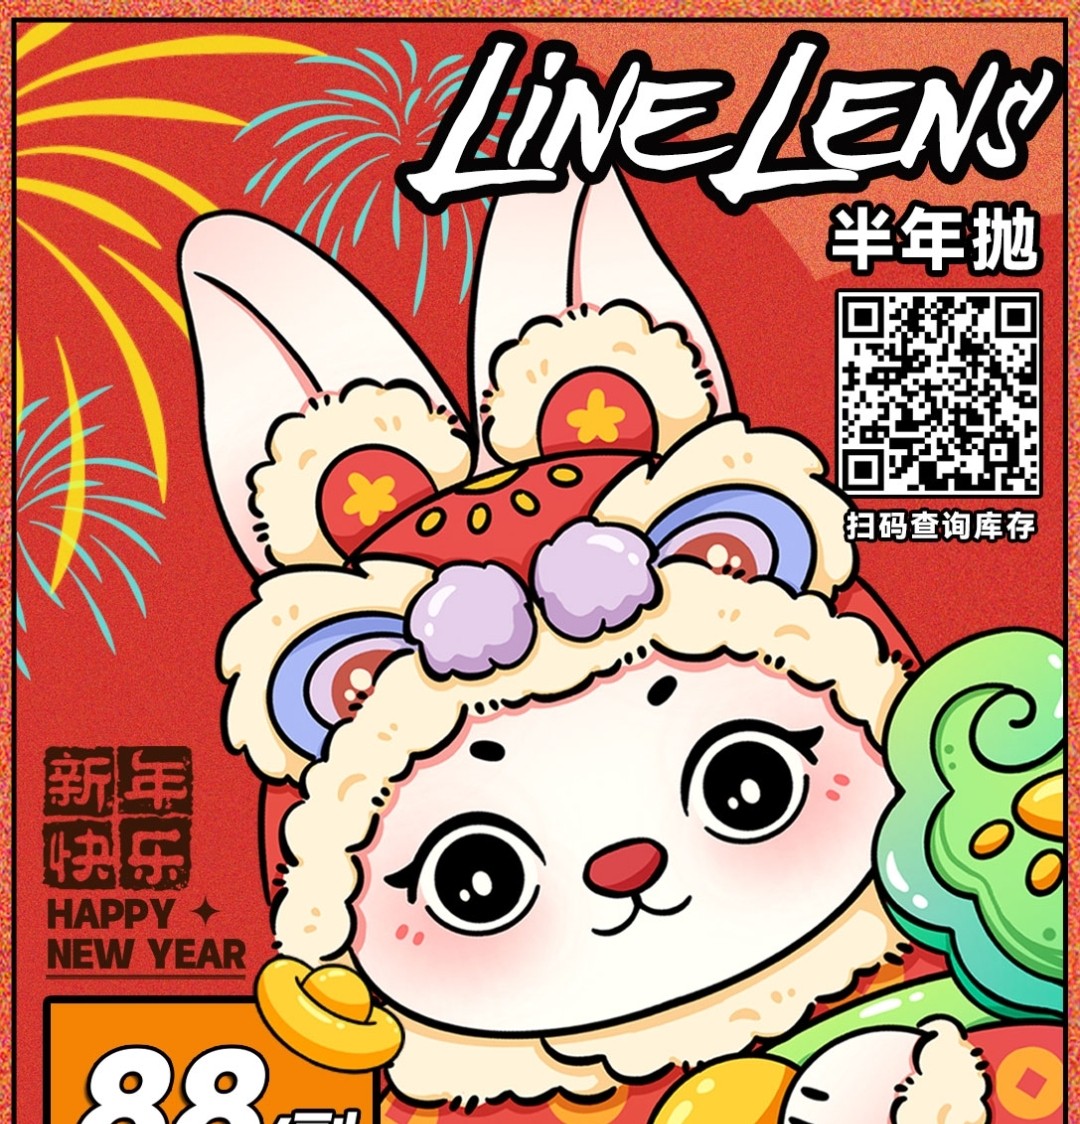 【半年抛】LineLens美瞳 带你跻身春节氛围顶流